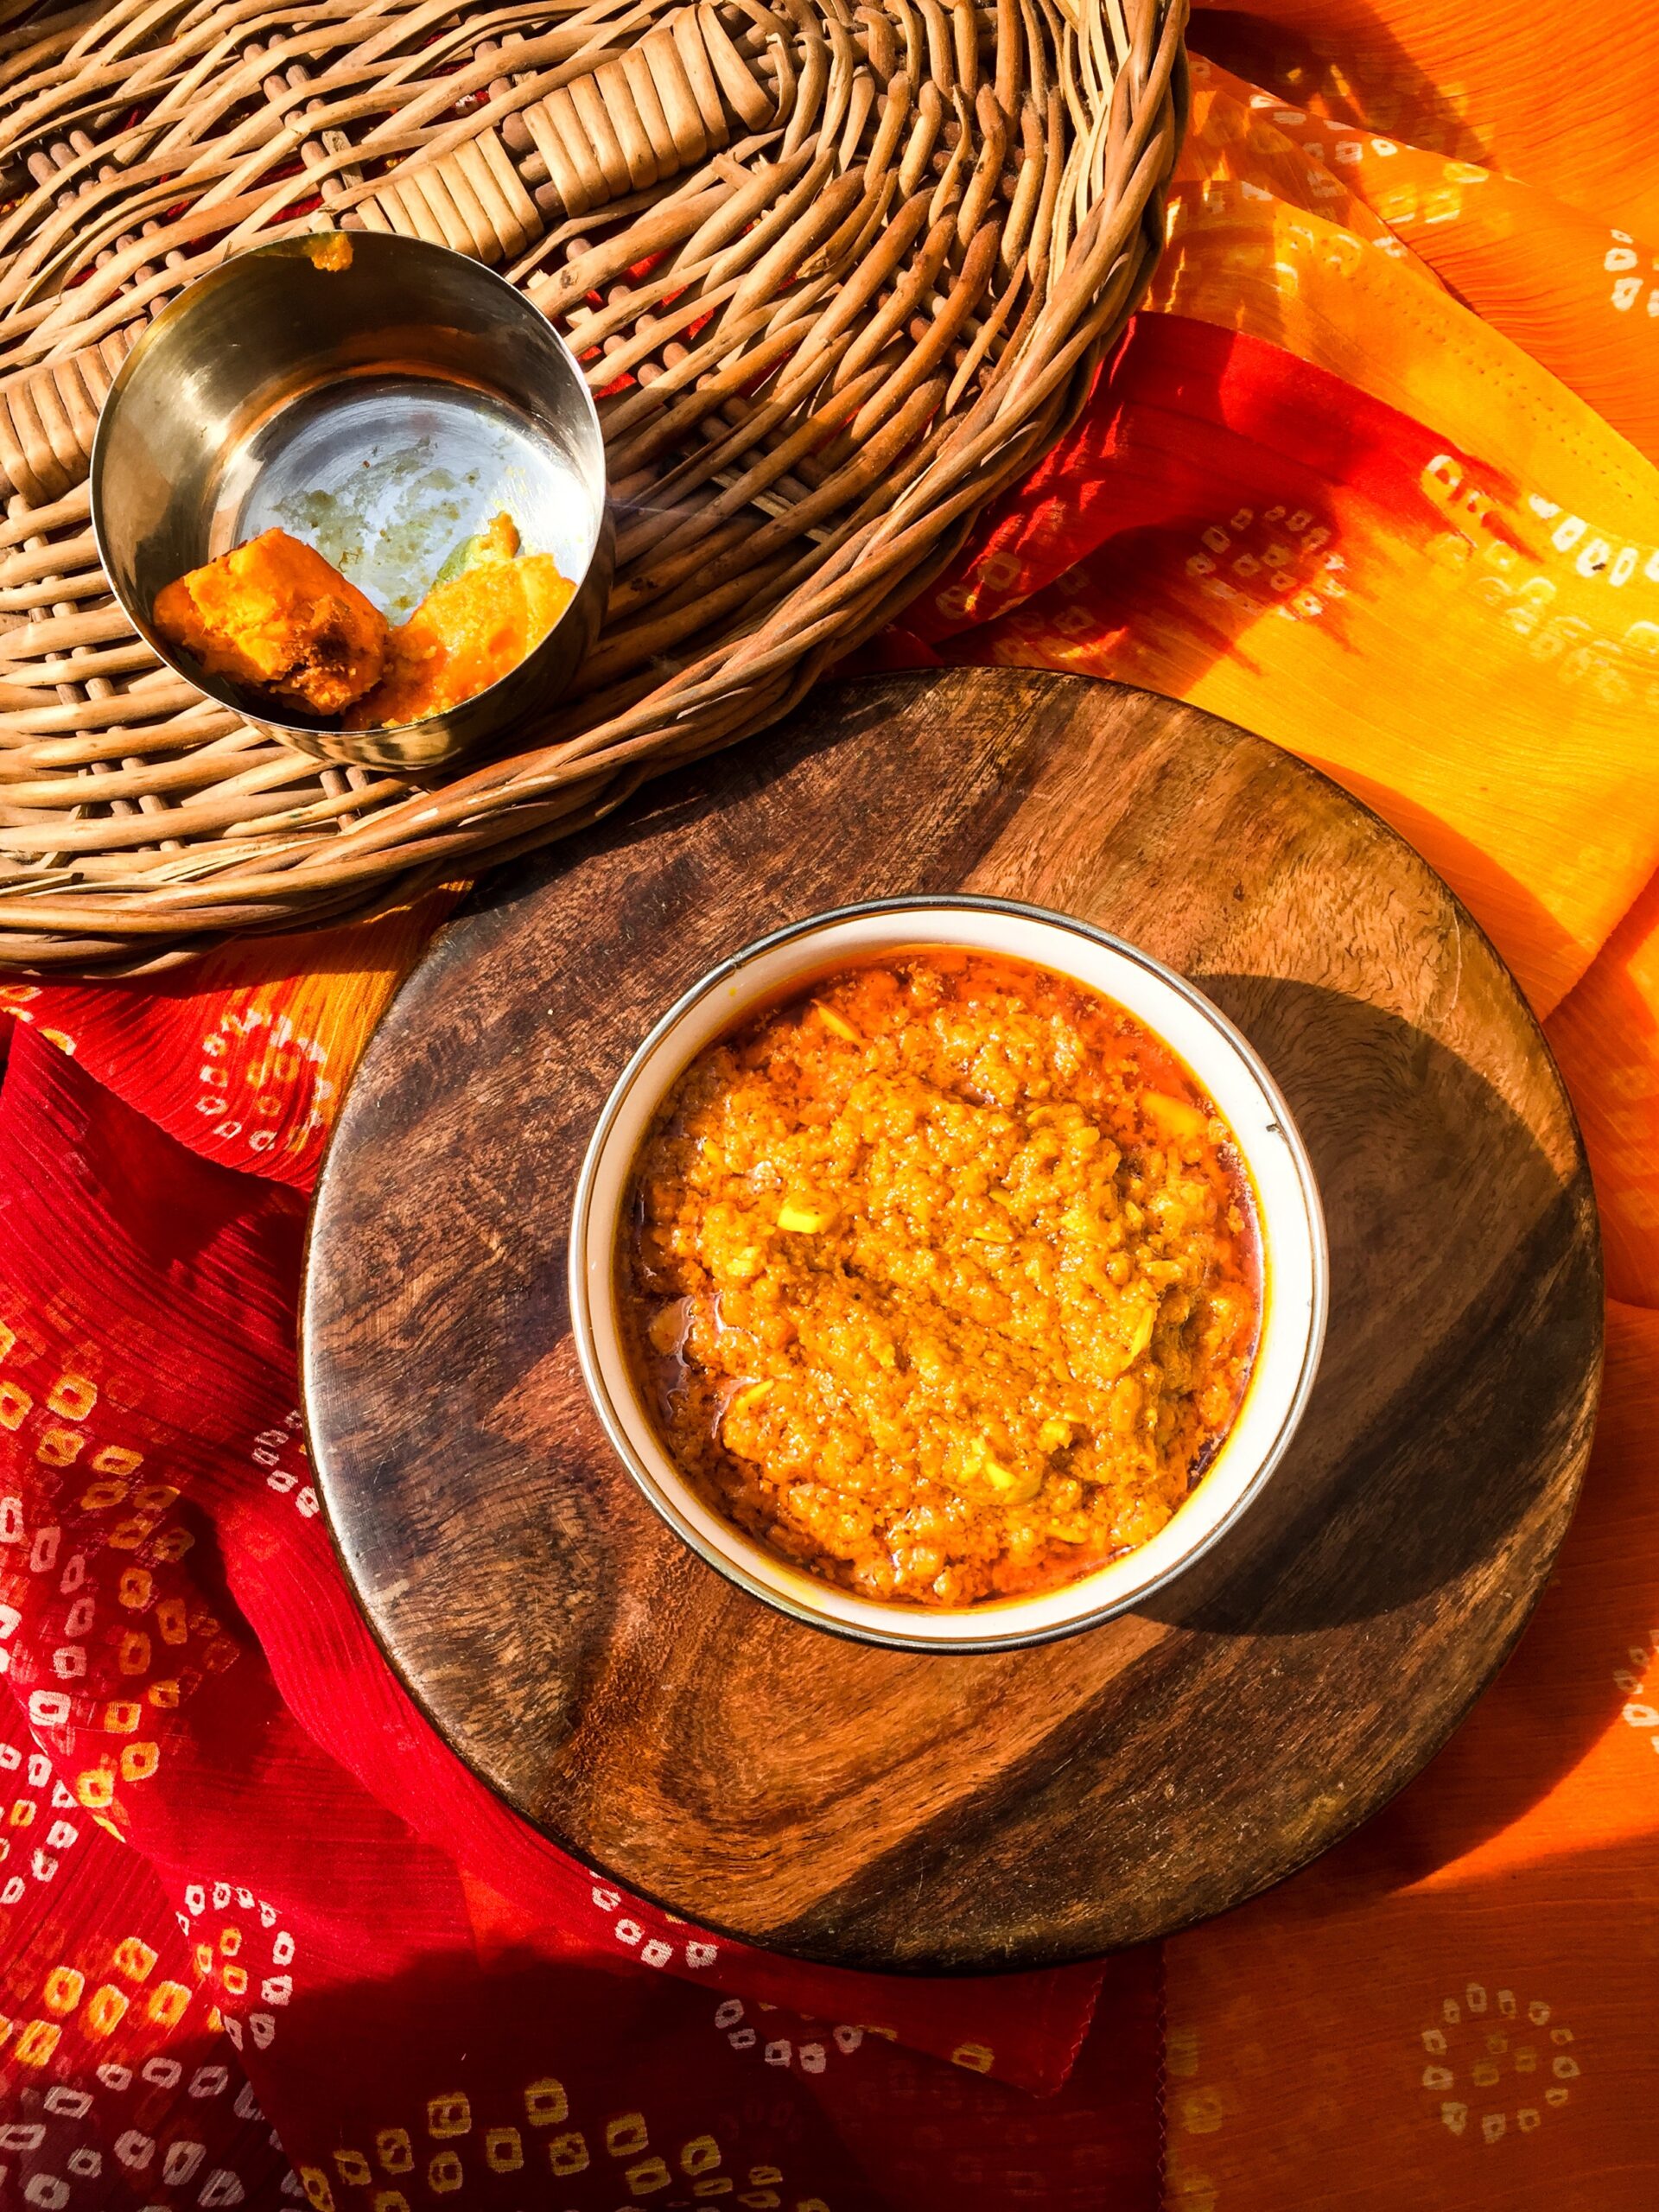 Healthy and easy way to make Rajasthani style haldi ki sabzi